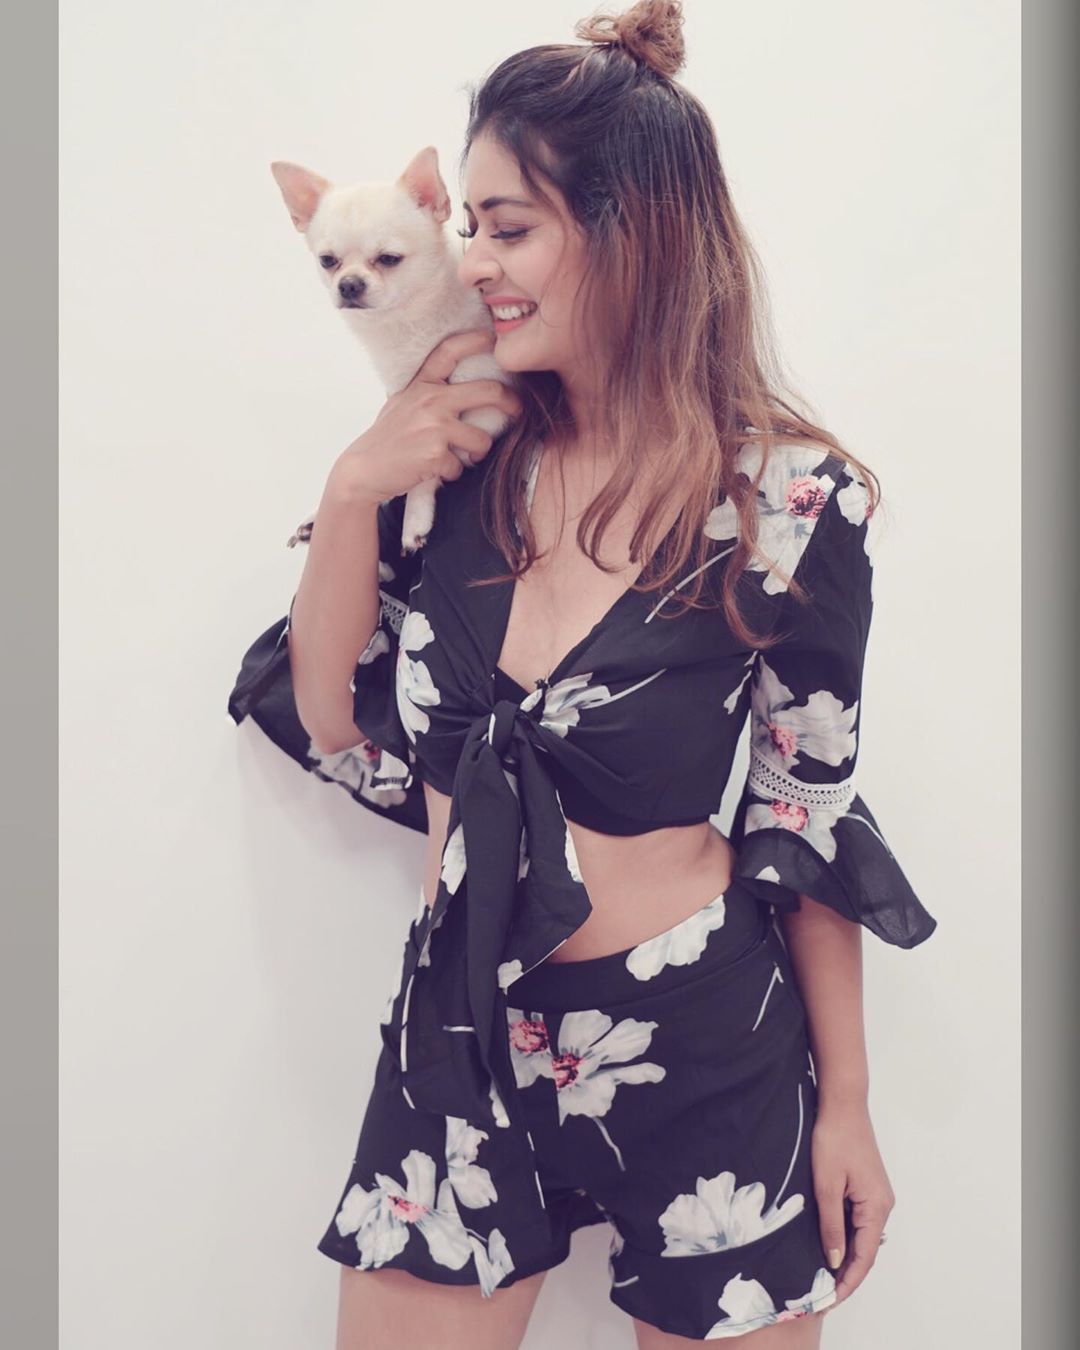 Payal Rajput Sexy Stills With Her Puppy